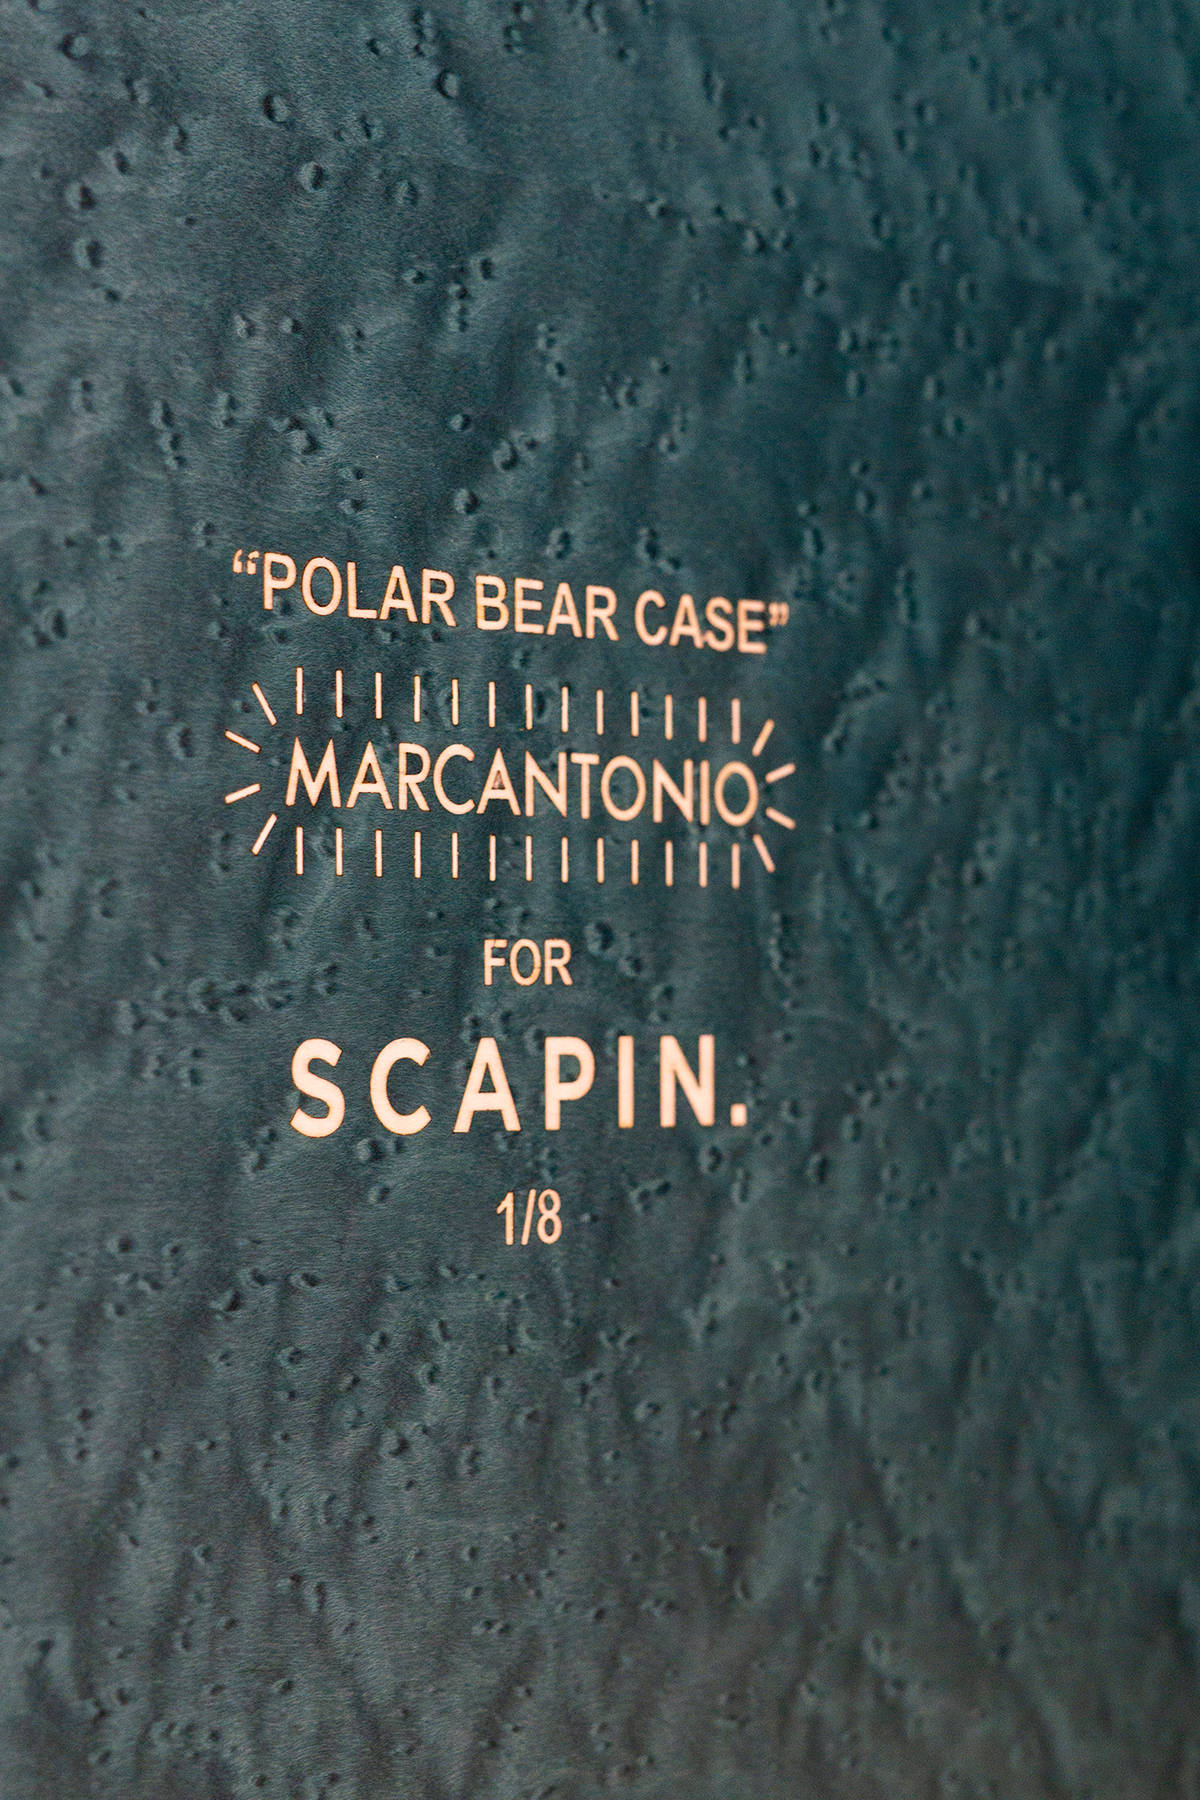 POLAR BEAR CASE - Marcantonio design